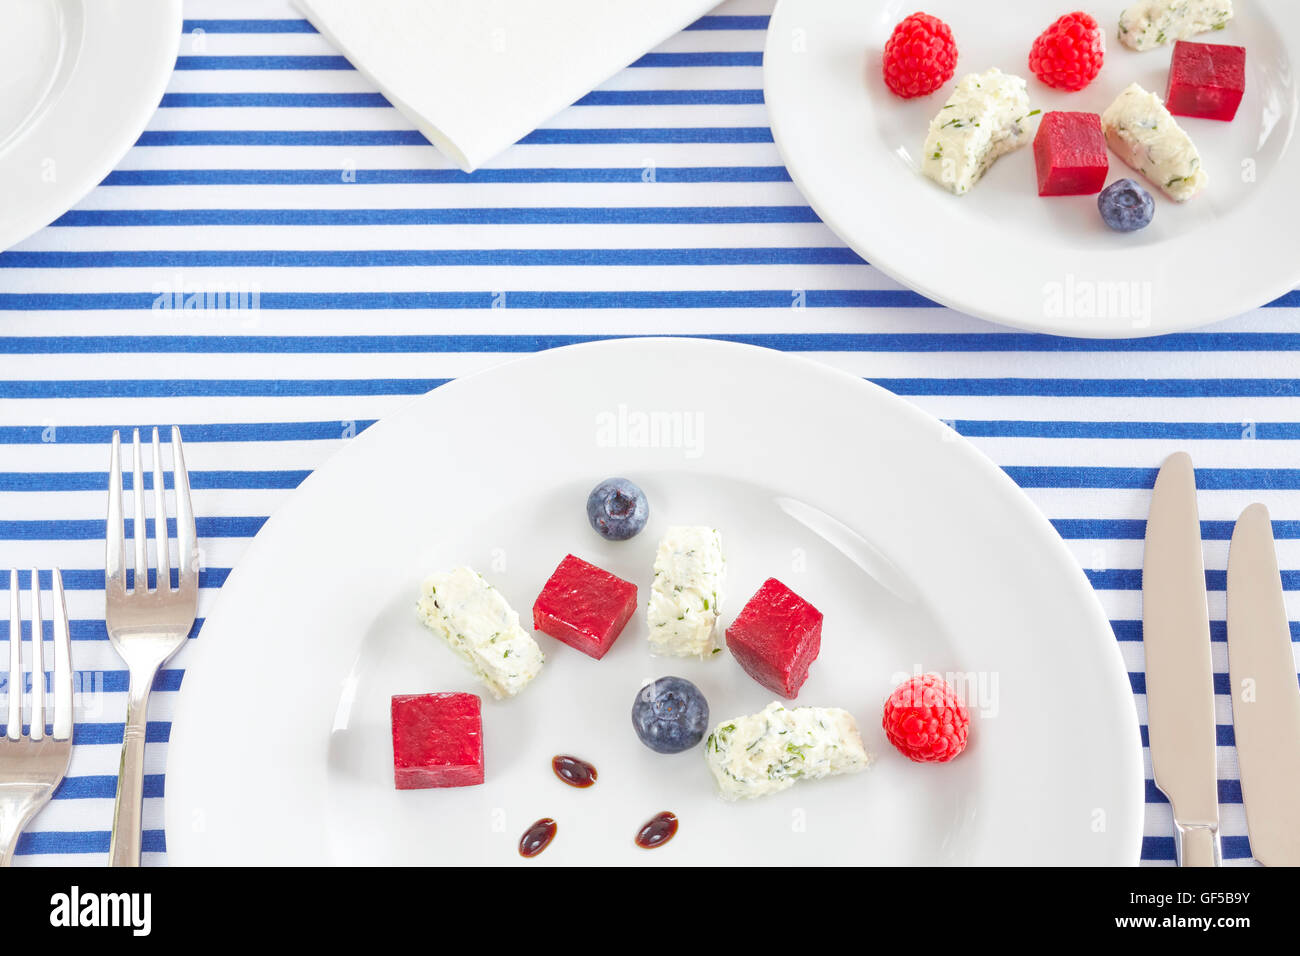 Vorspeise, gemacht von Rüben, Quark mit Früchten auf weißen Platten. Stockfoto